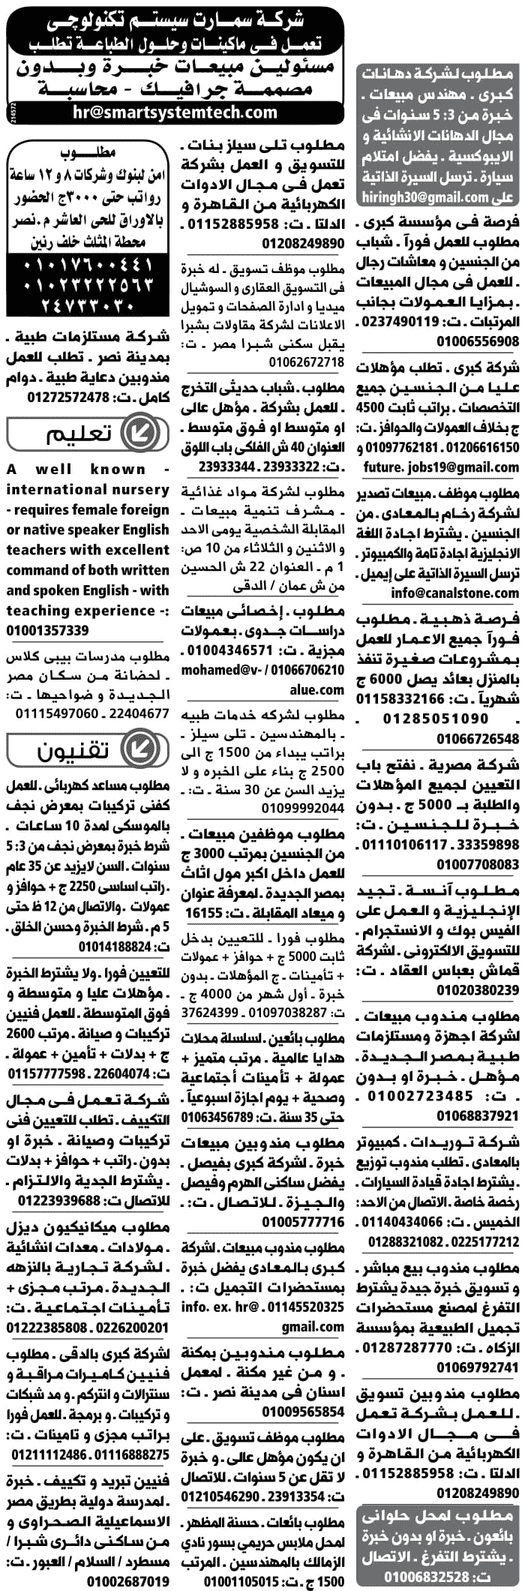 الوسيط مصر ووظائف الجمعة 8/2/2019 3